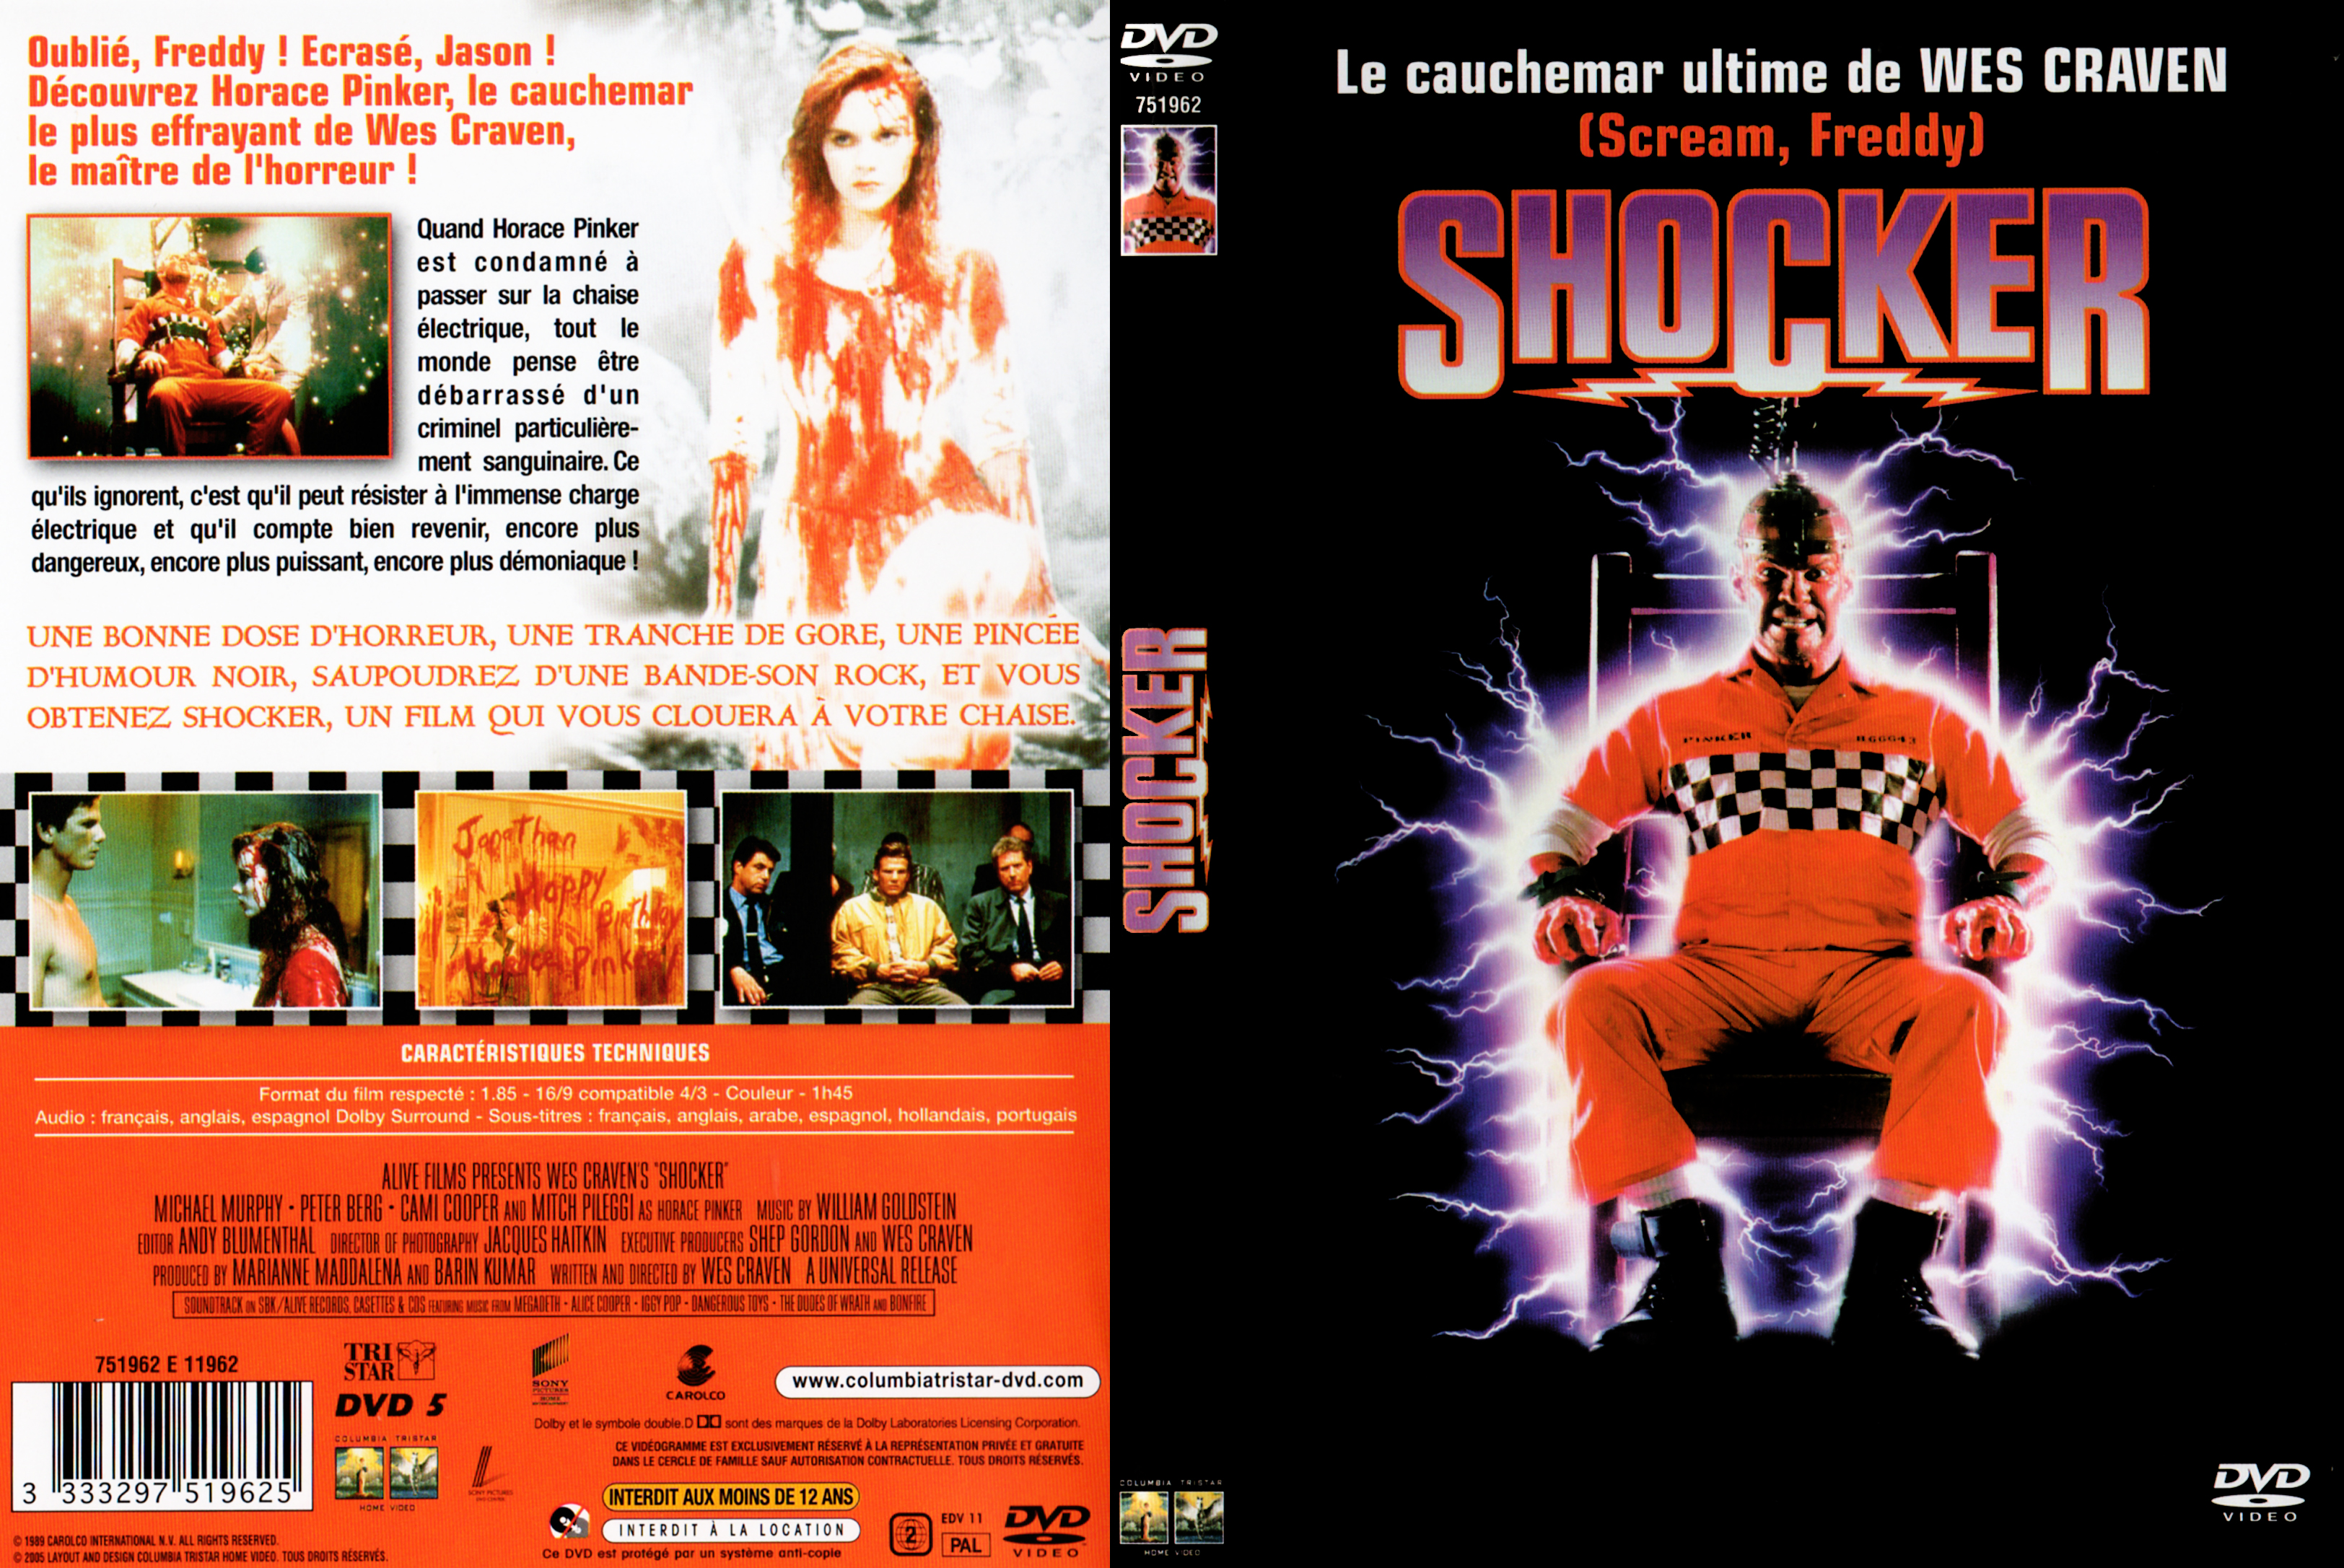 Jaquette DVD Shocker